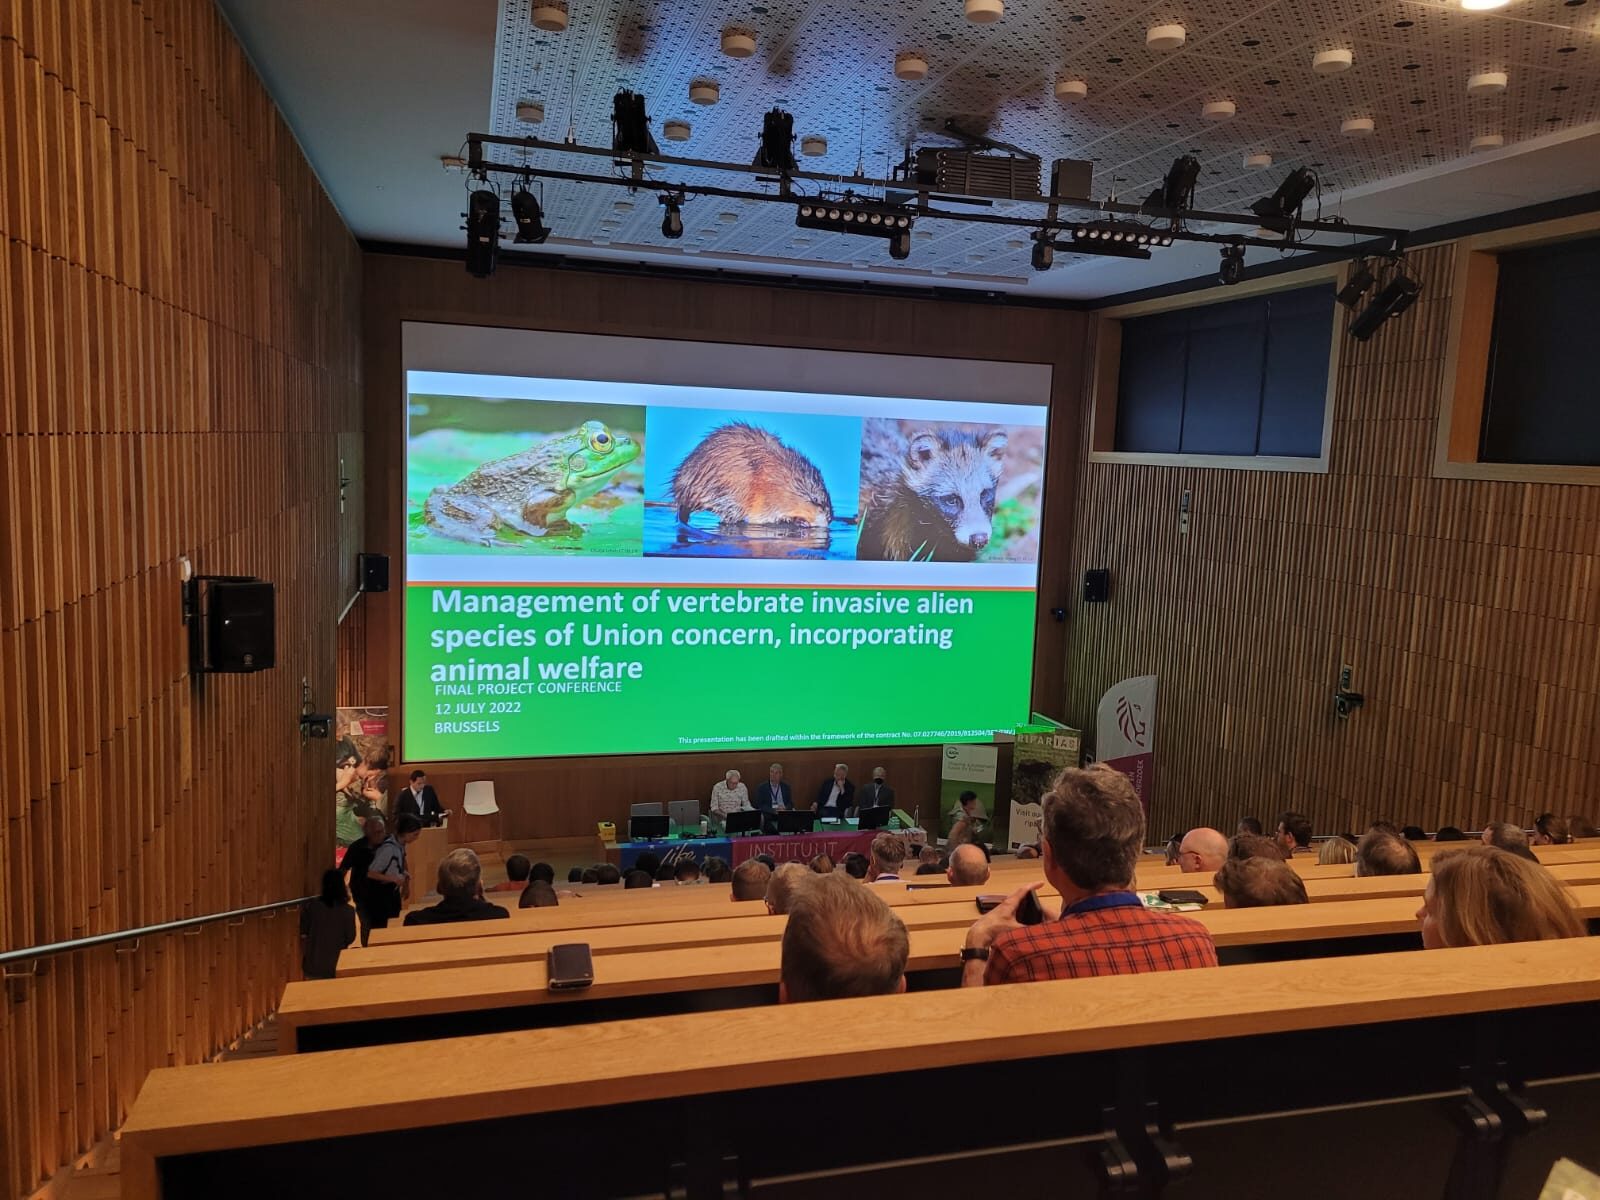 Konferencja na temat zarządzania inwazyjnymi gatunkami obcymi kręgowców stwarzających zagrożenie dla Unii, uwzględniająca dobrostan zwierząt - 12.07.2022